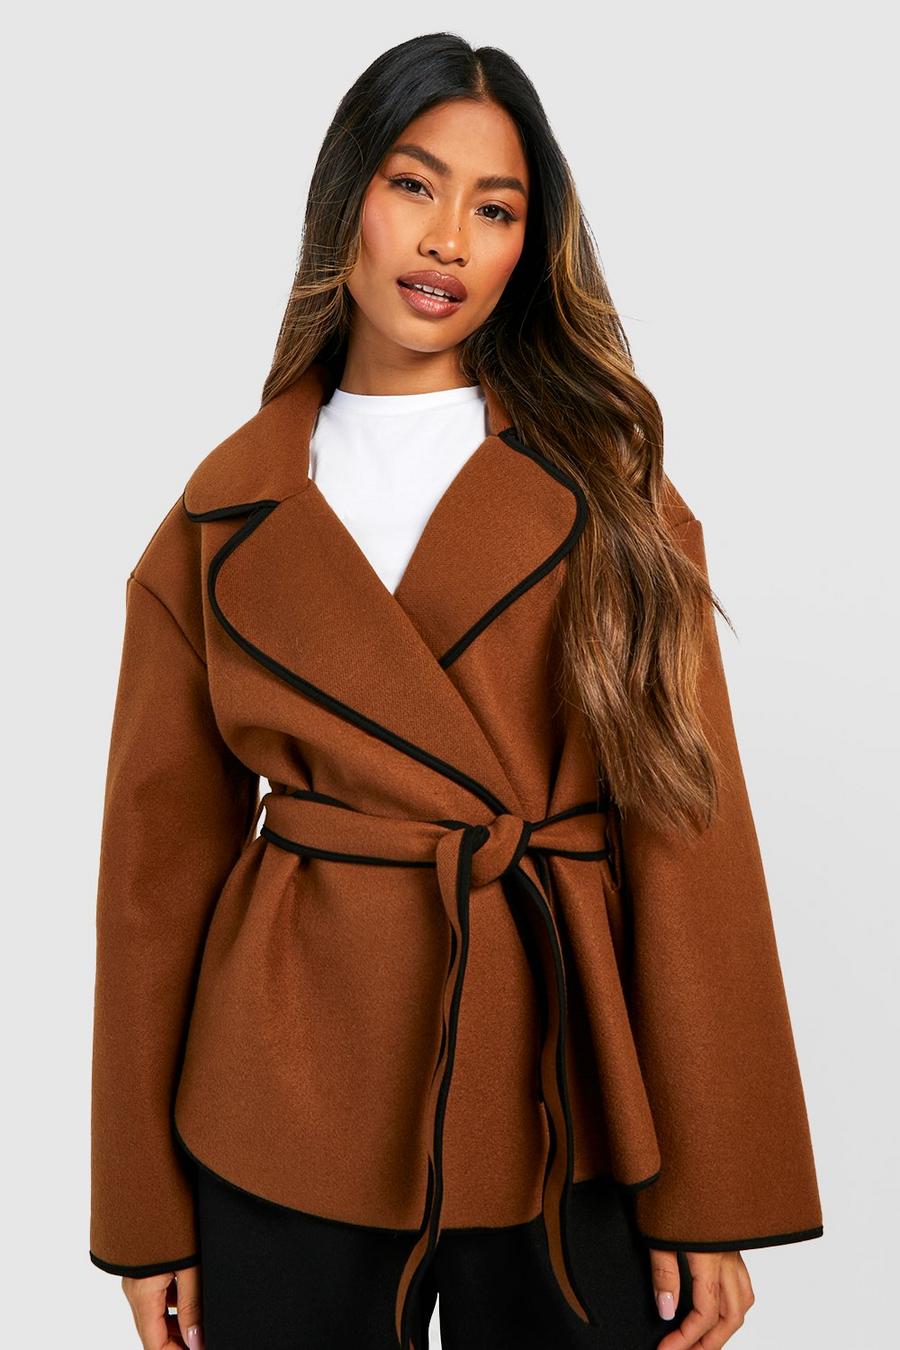 Mantel mit Kontrast-Detail und Gürtel, Chocolate marron